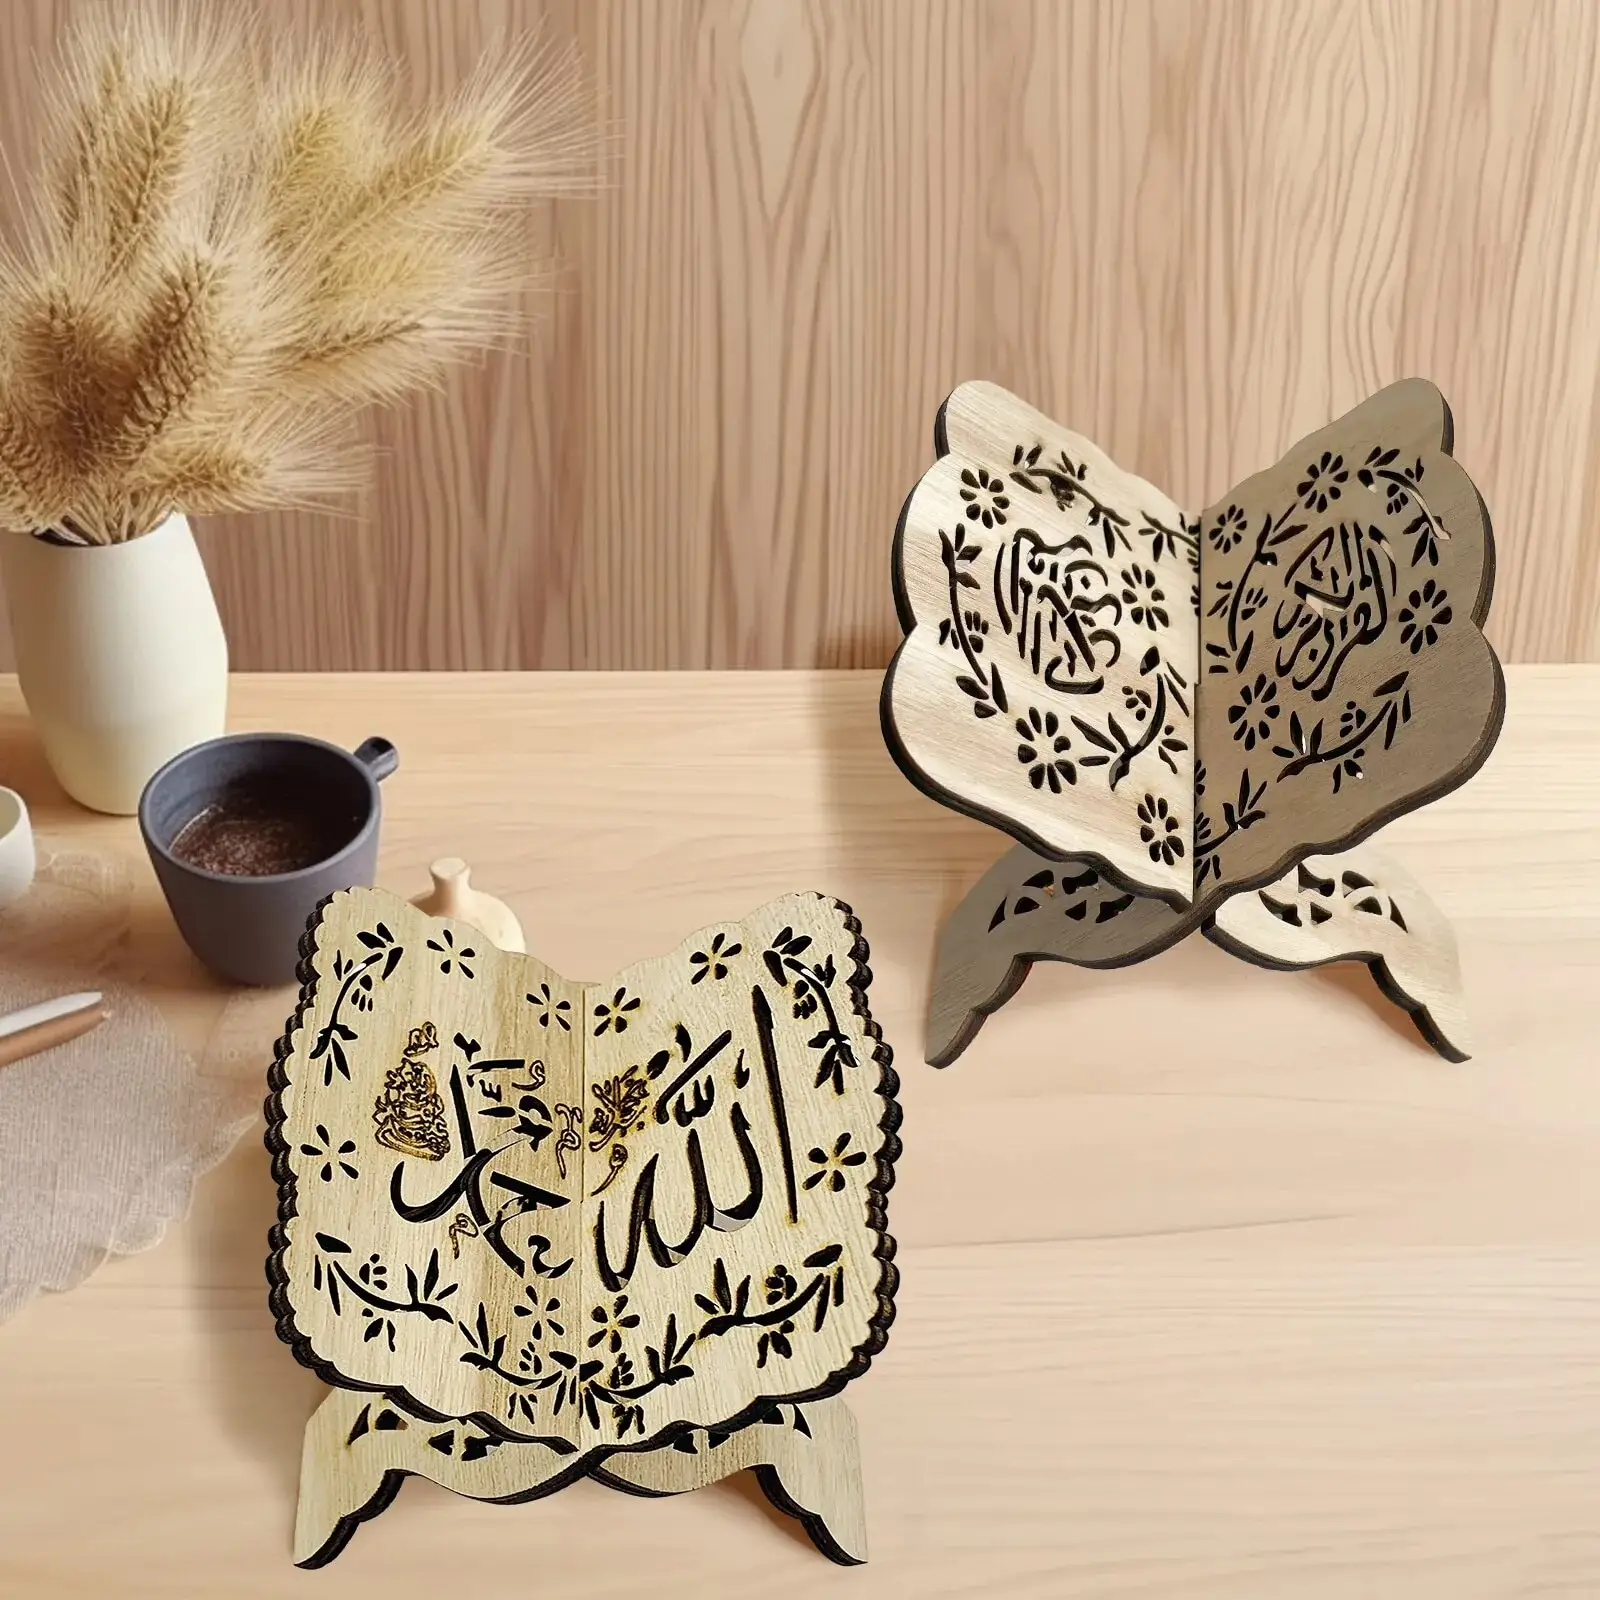 Ourwarm cuốn sách bằng gỗ Kệ chủ thánh cầu nguyện cuốn sách đứng bằng gỗ mảng bám hồi giáo EID ramadan mubarak trang trí nhà